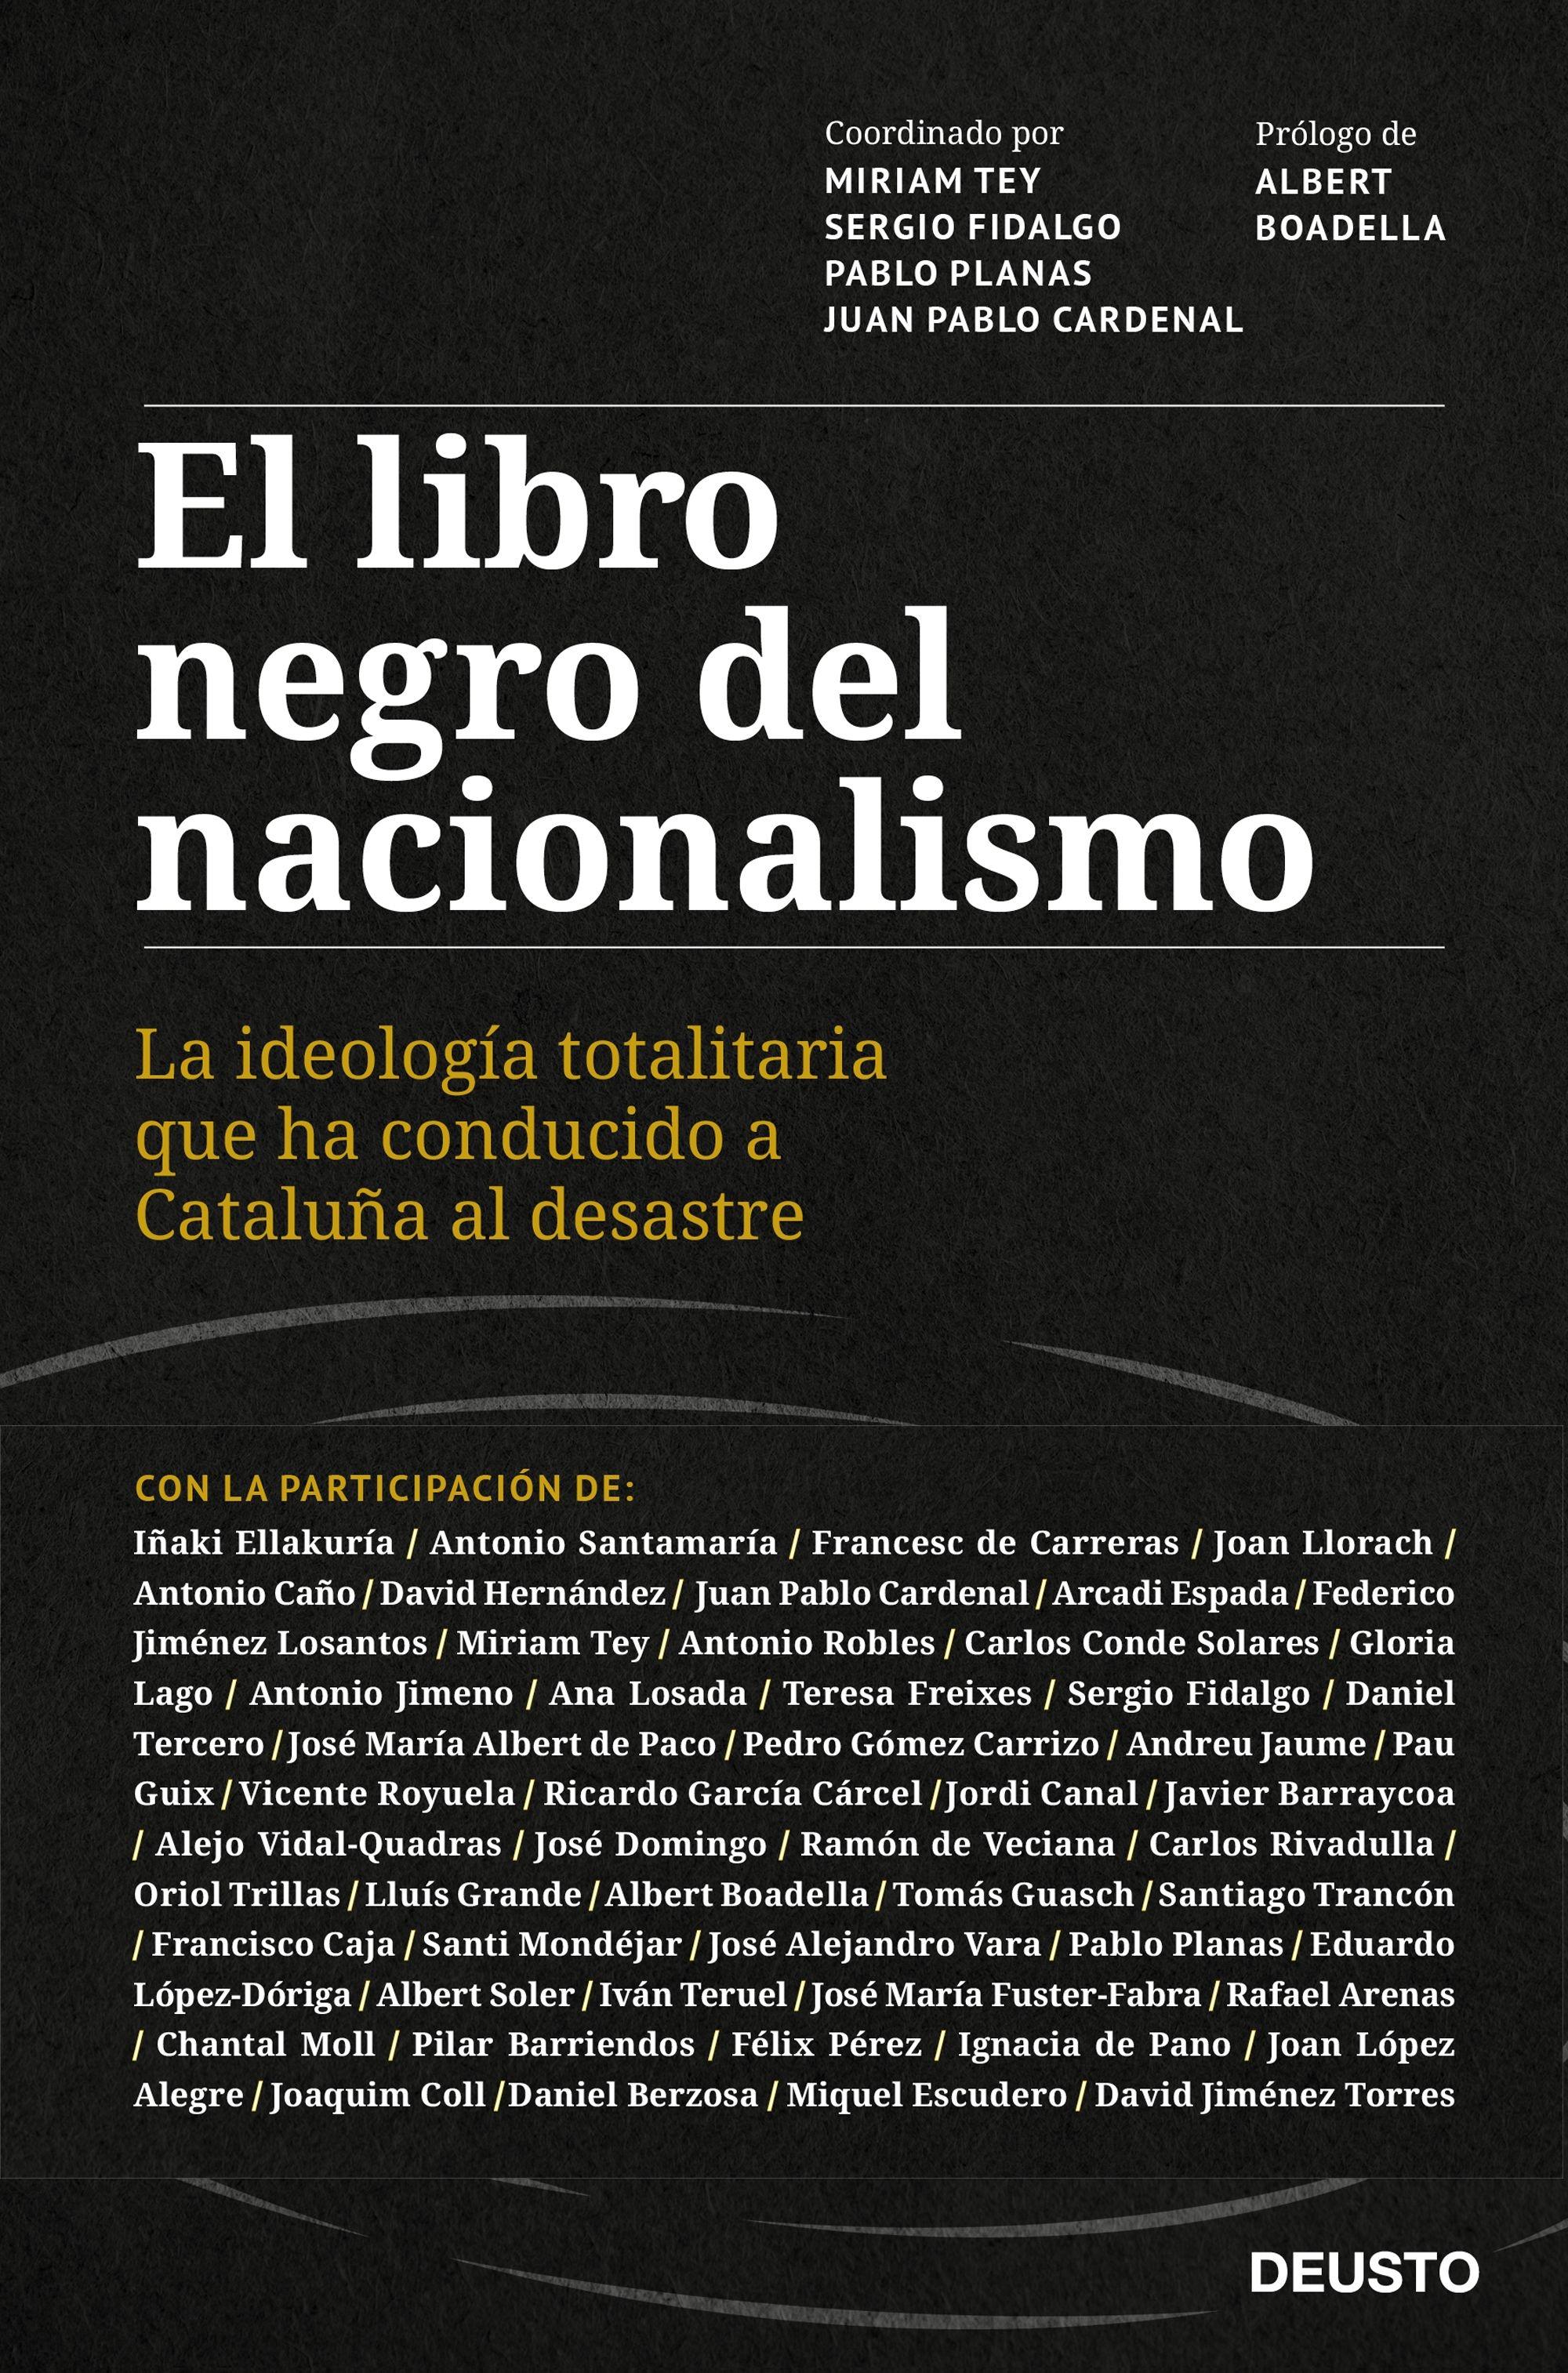 El libro negro del nacionalismo "La ideología totalitaria que ha conducido a Cataluña al desastre"